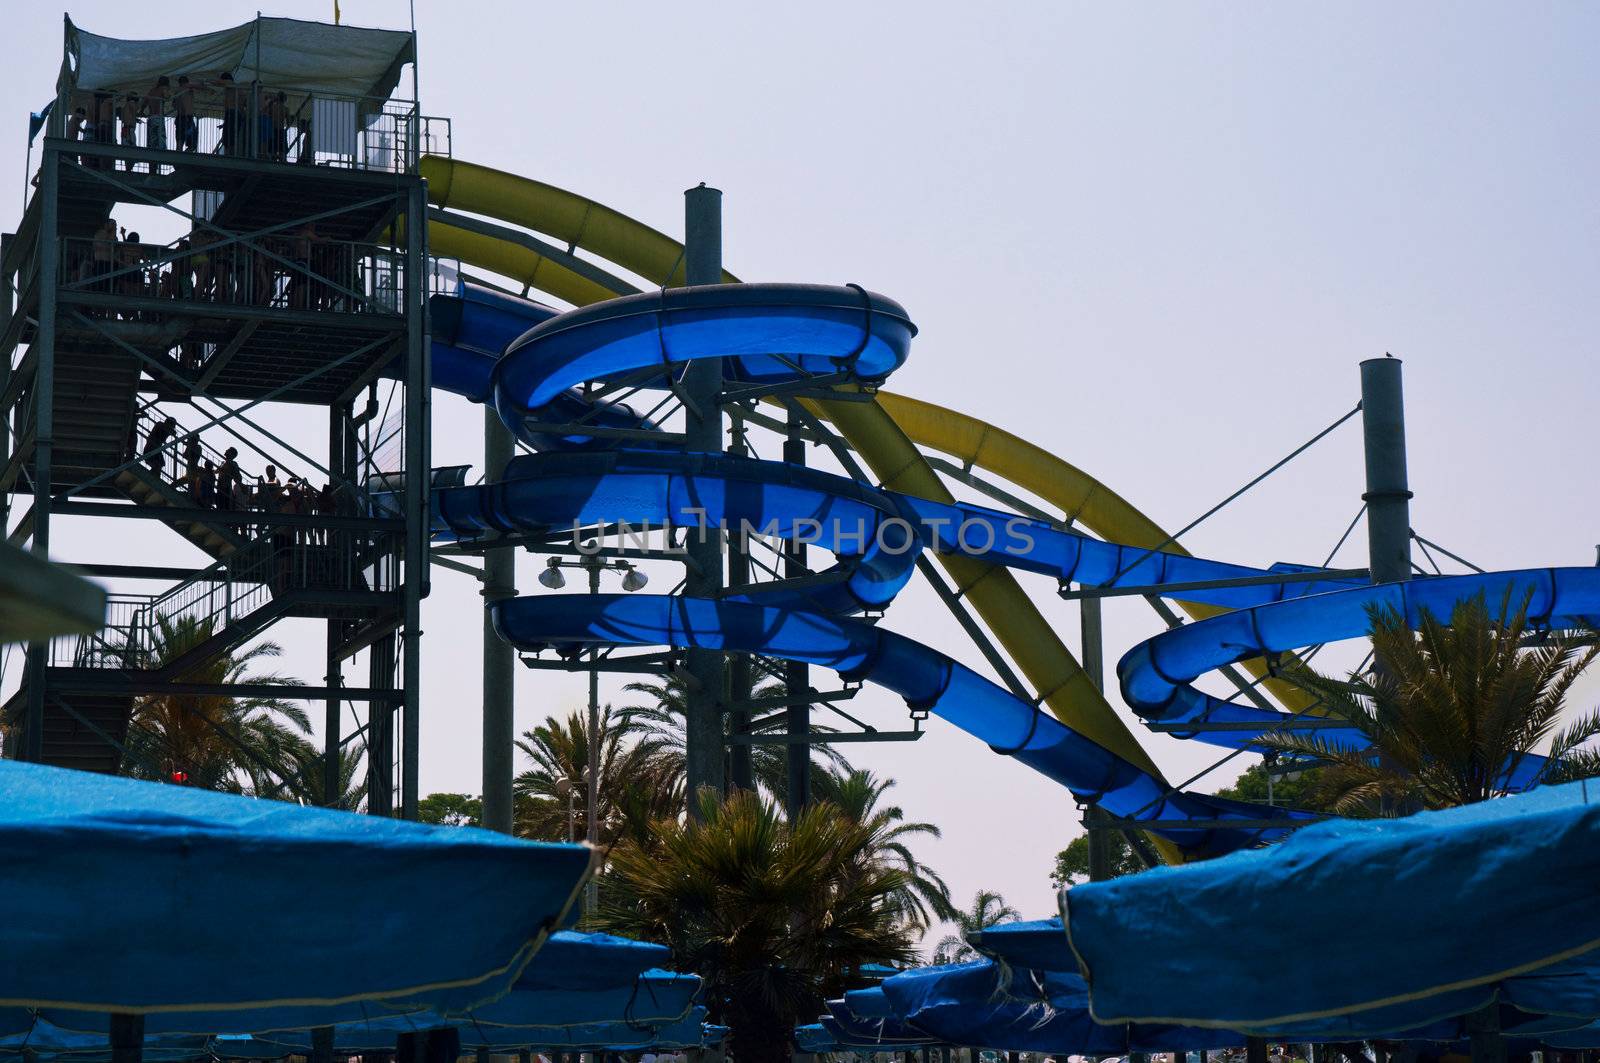 
Colorful water slide in aqua park .
